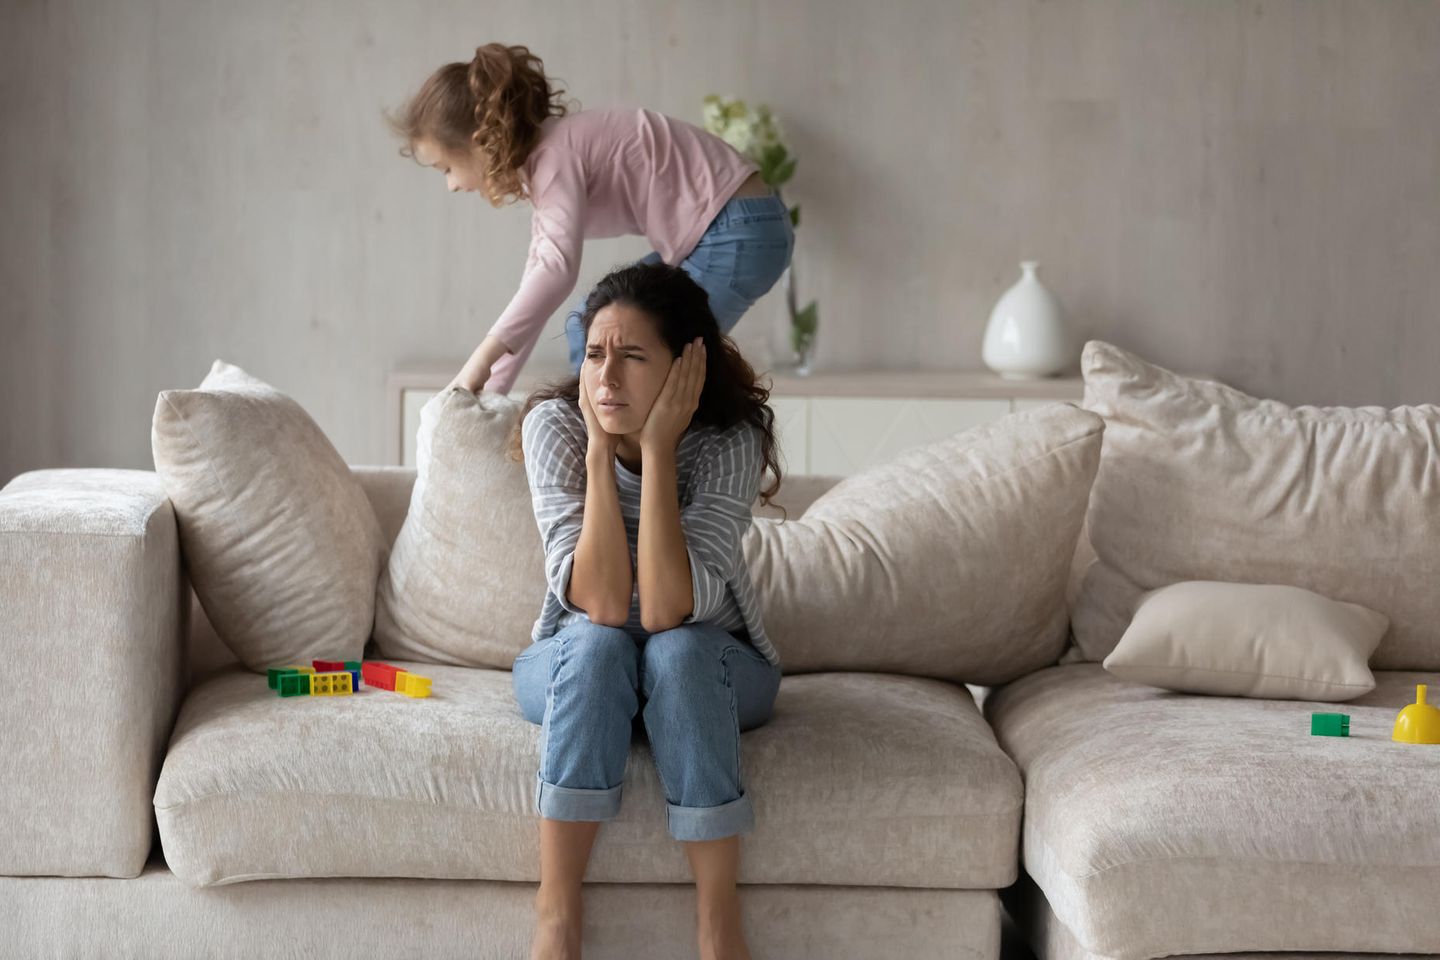 Familienkolumne: Mädchen turnt auf Sofa herum, während Mutter darauf sitzt und sich die Ohren zuhält